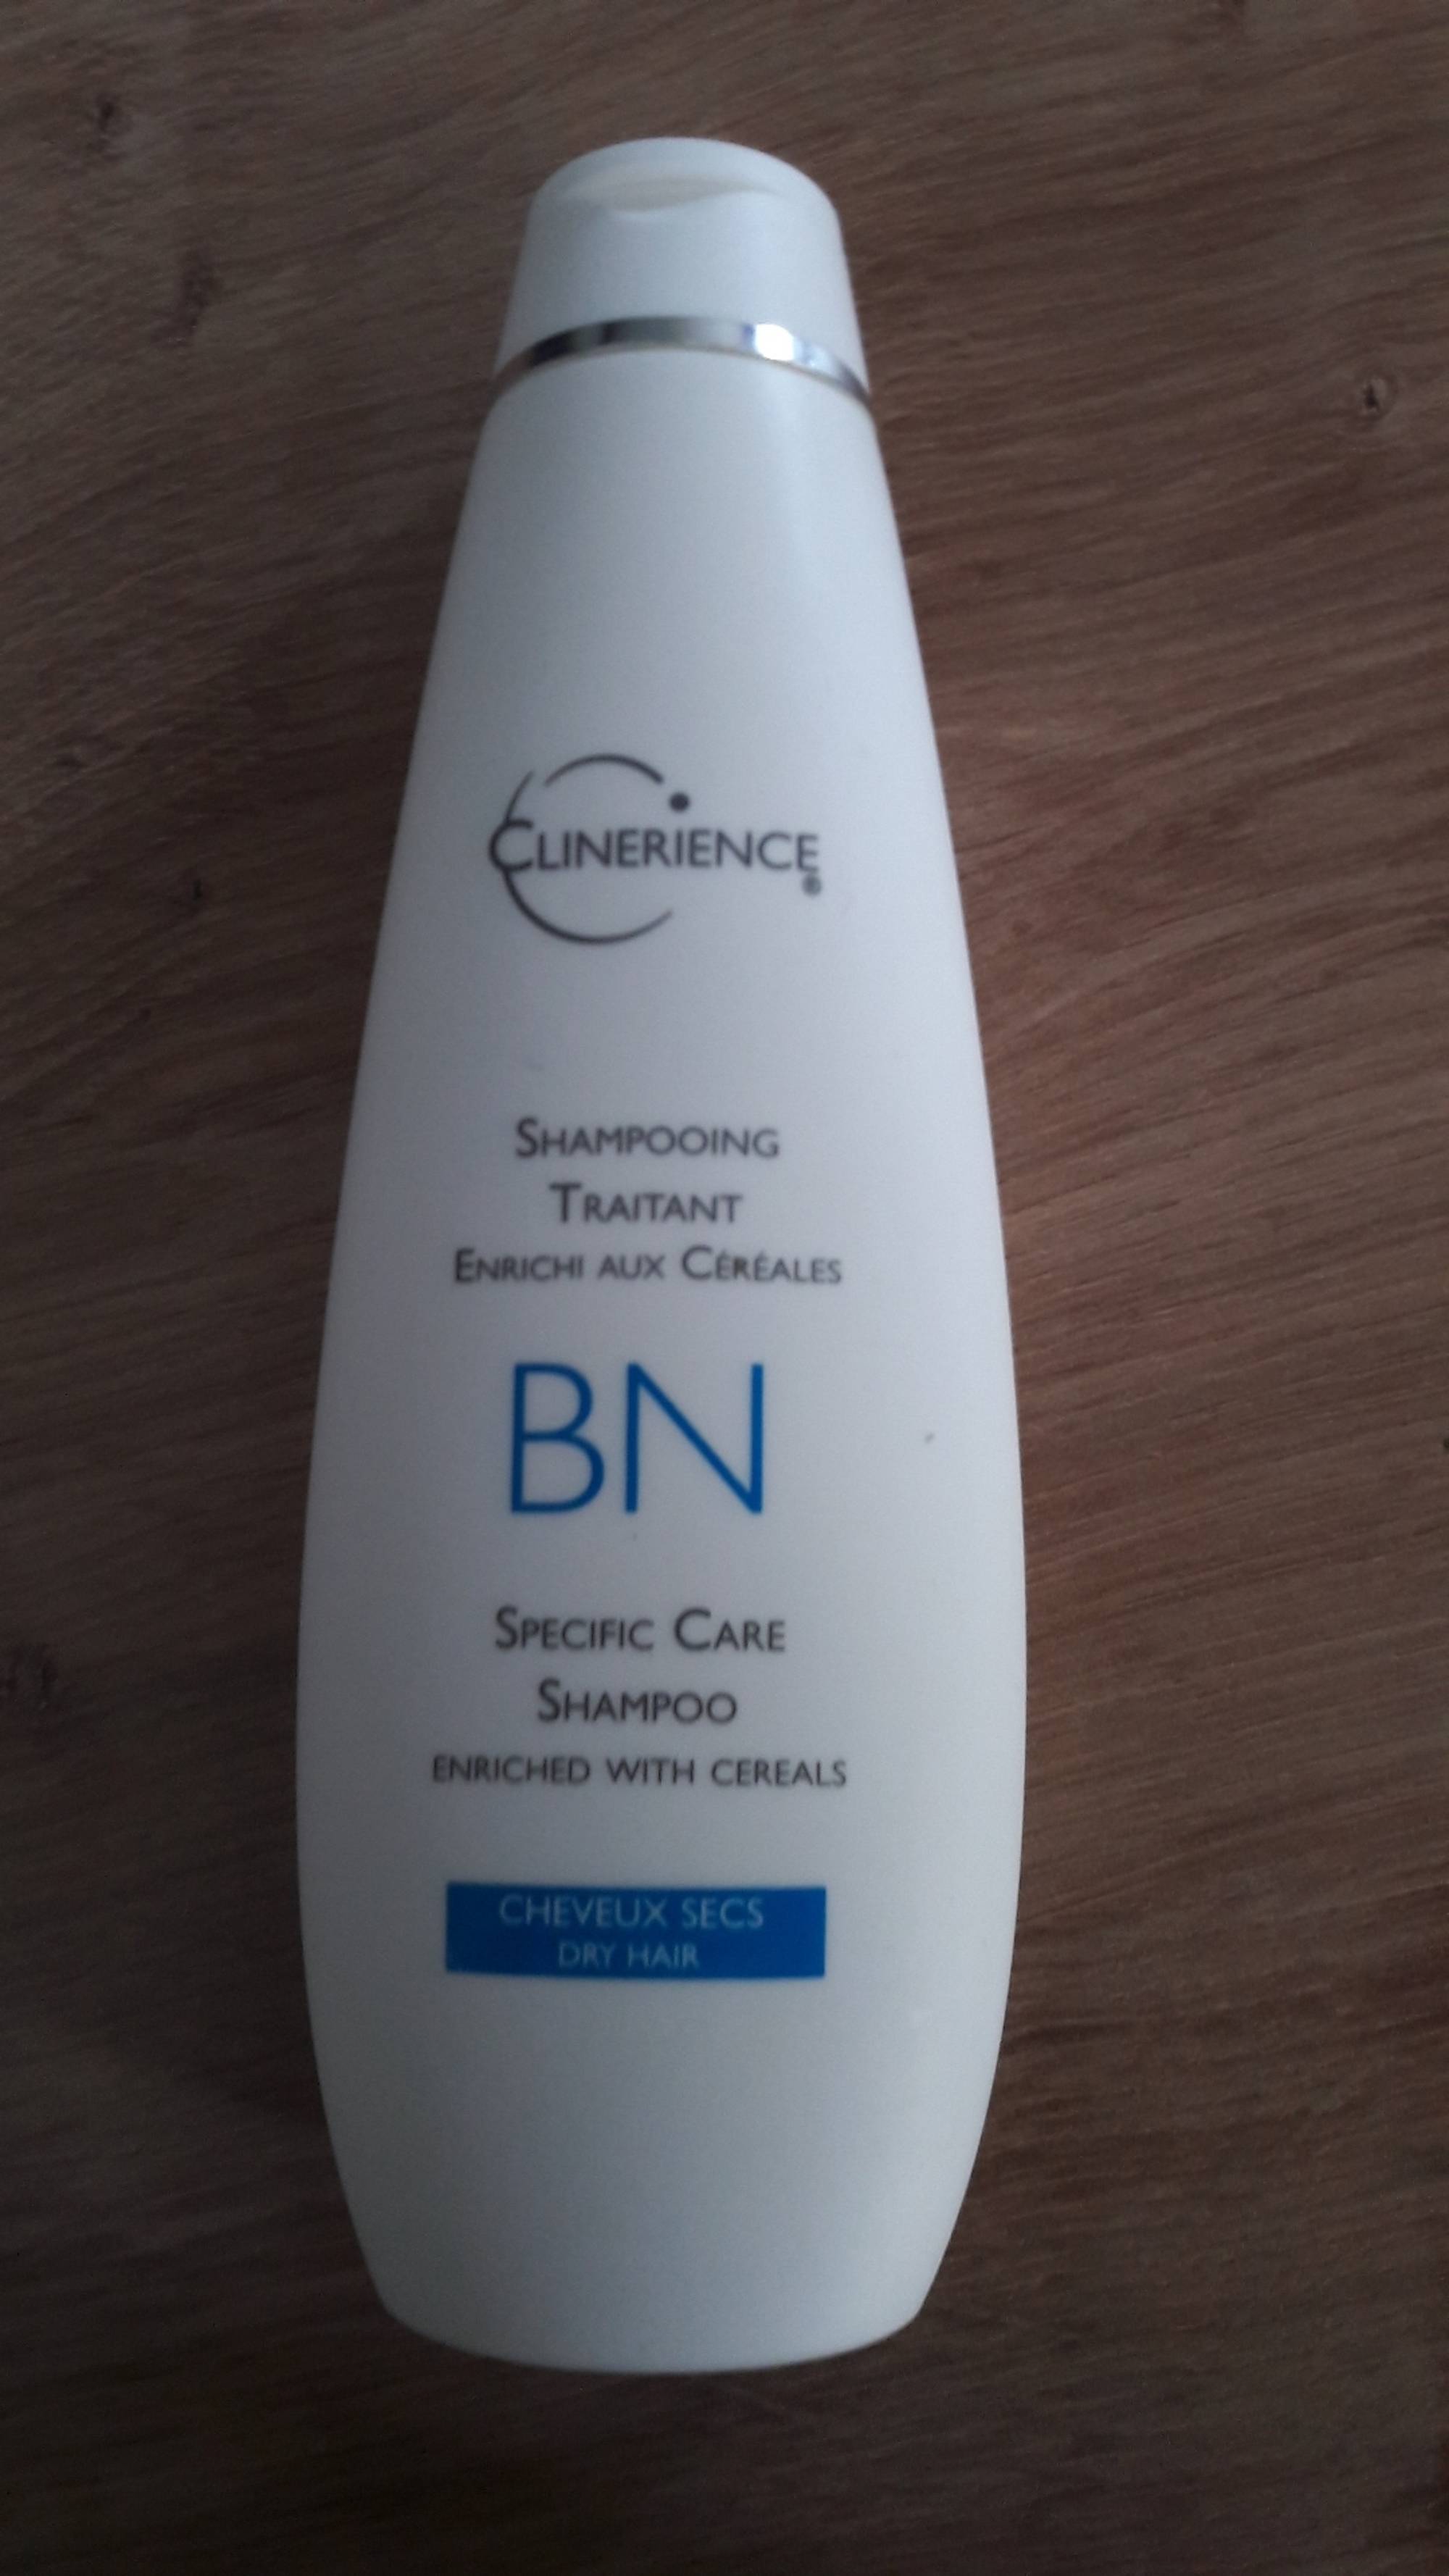 CLINERIENCE - BN - Shampooing traitant enrichi aux céréales 